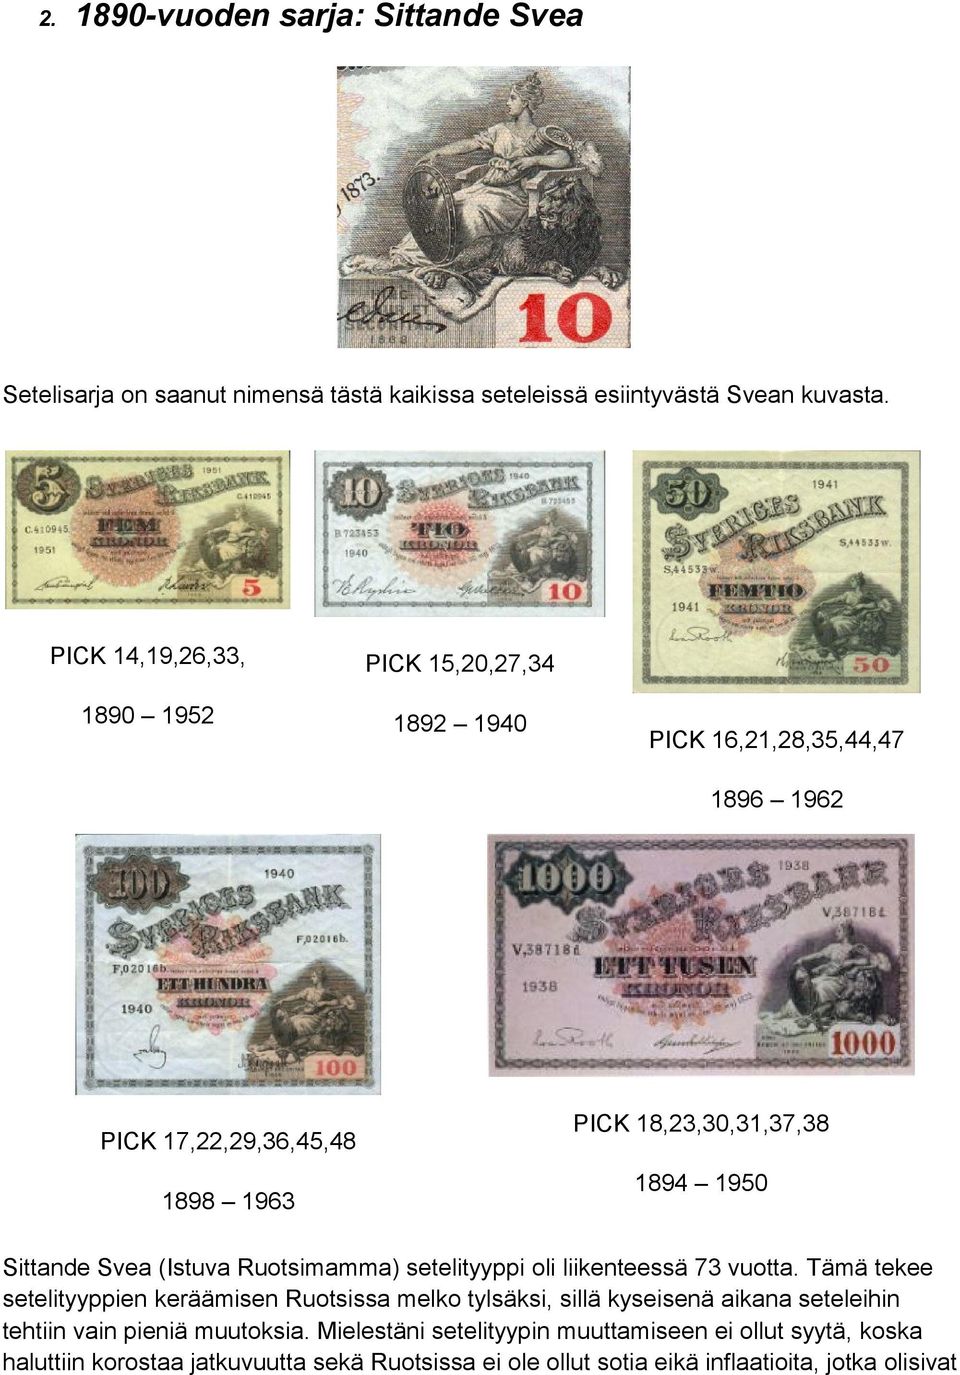 Sittande Svea (Istuva Ruotsimamma) setelityyppi oli liikenteessä 73 vuotta.